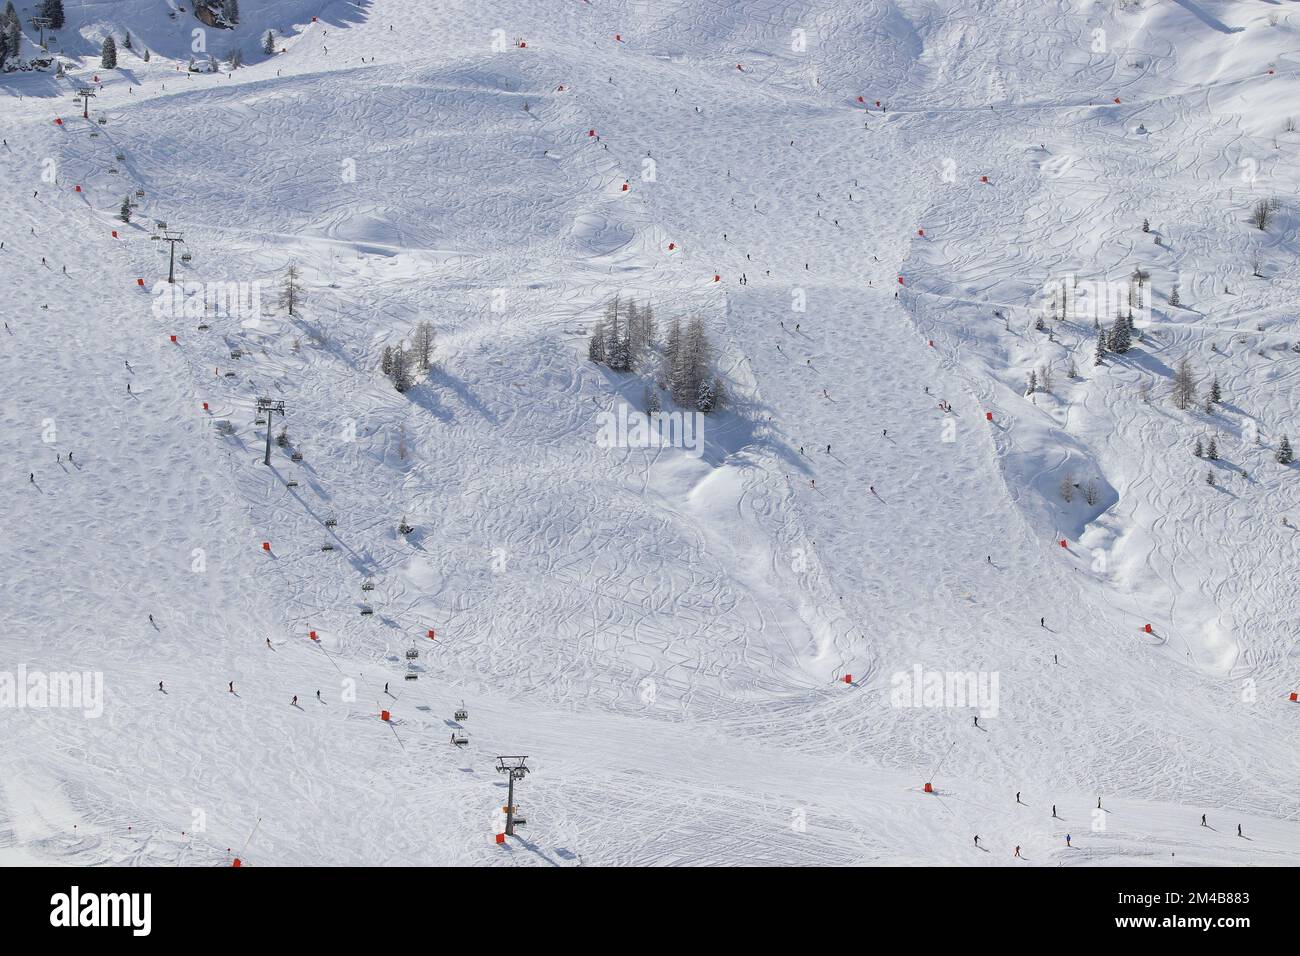 Mayrhofen - station de ski d'hiver autrichienne dans le Tyrol. Alpes centrales autrichiennes. Banque D'Images